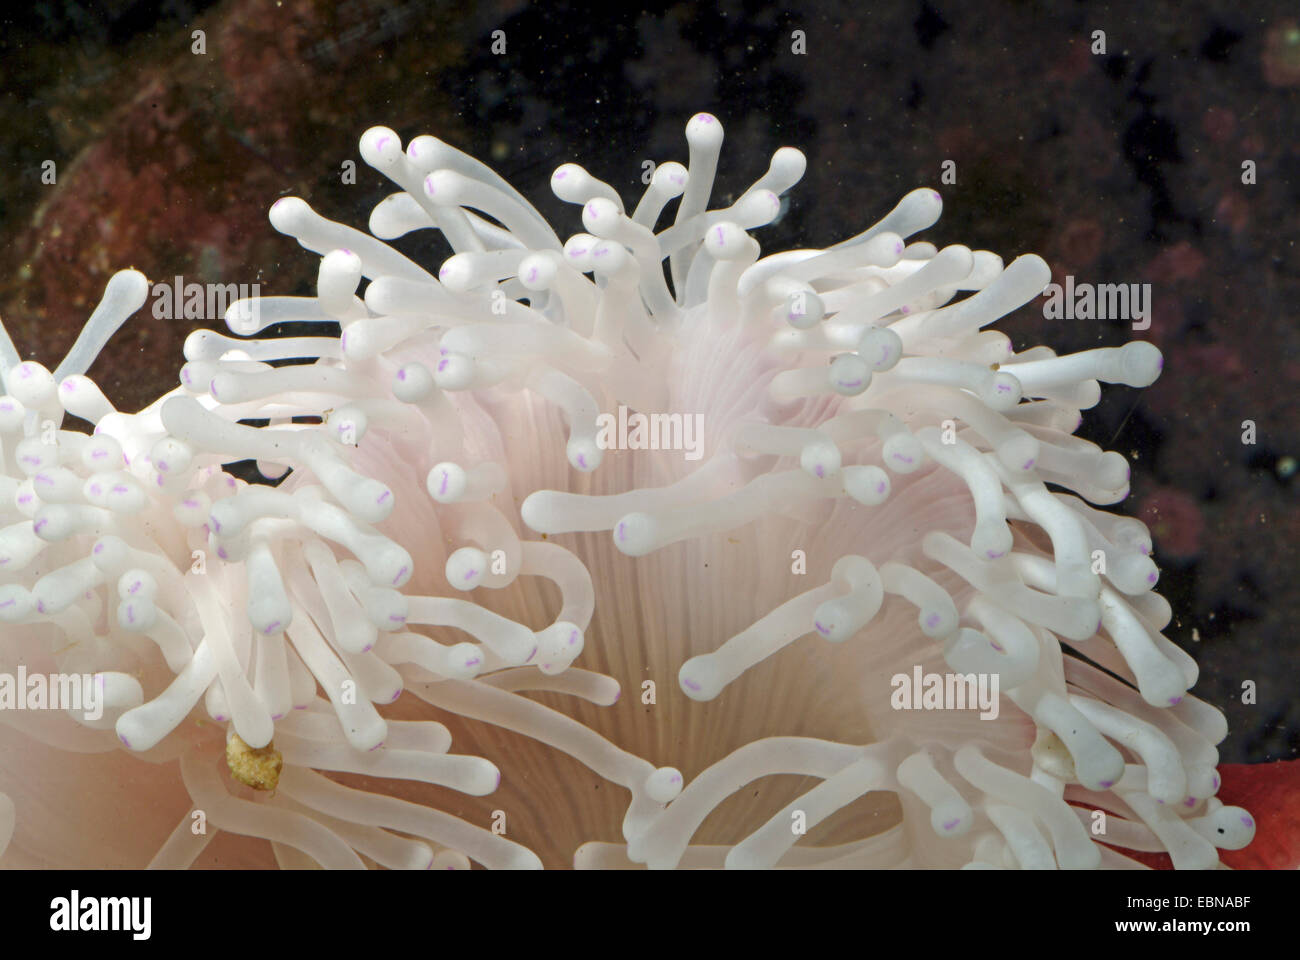 Magnifica anemone, magnifica anemone marittimo (Heteractis magnifica) tentacoli di un magnifico anemone Foto Stock